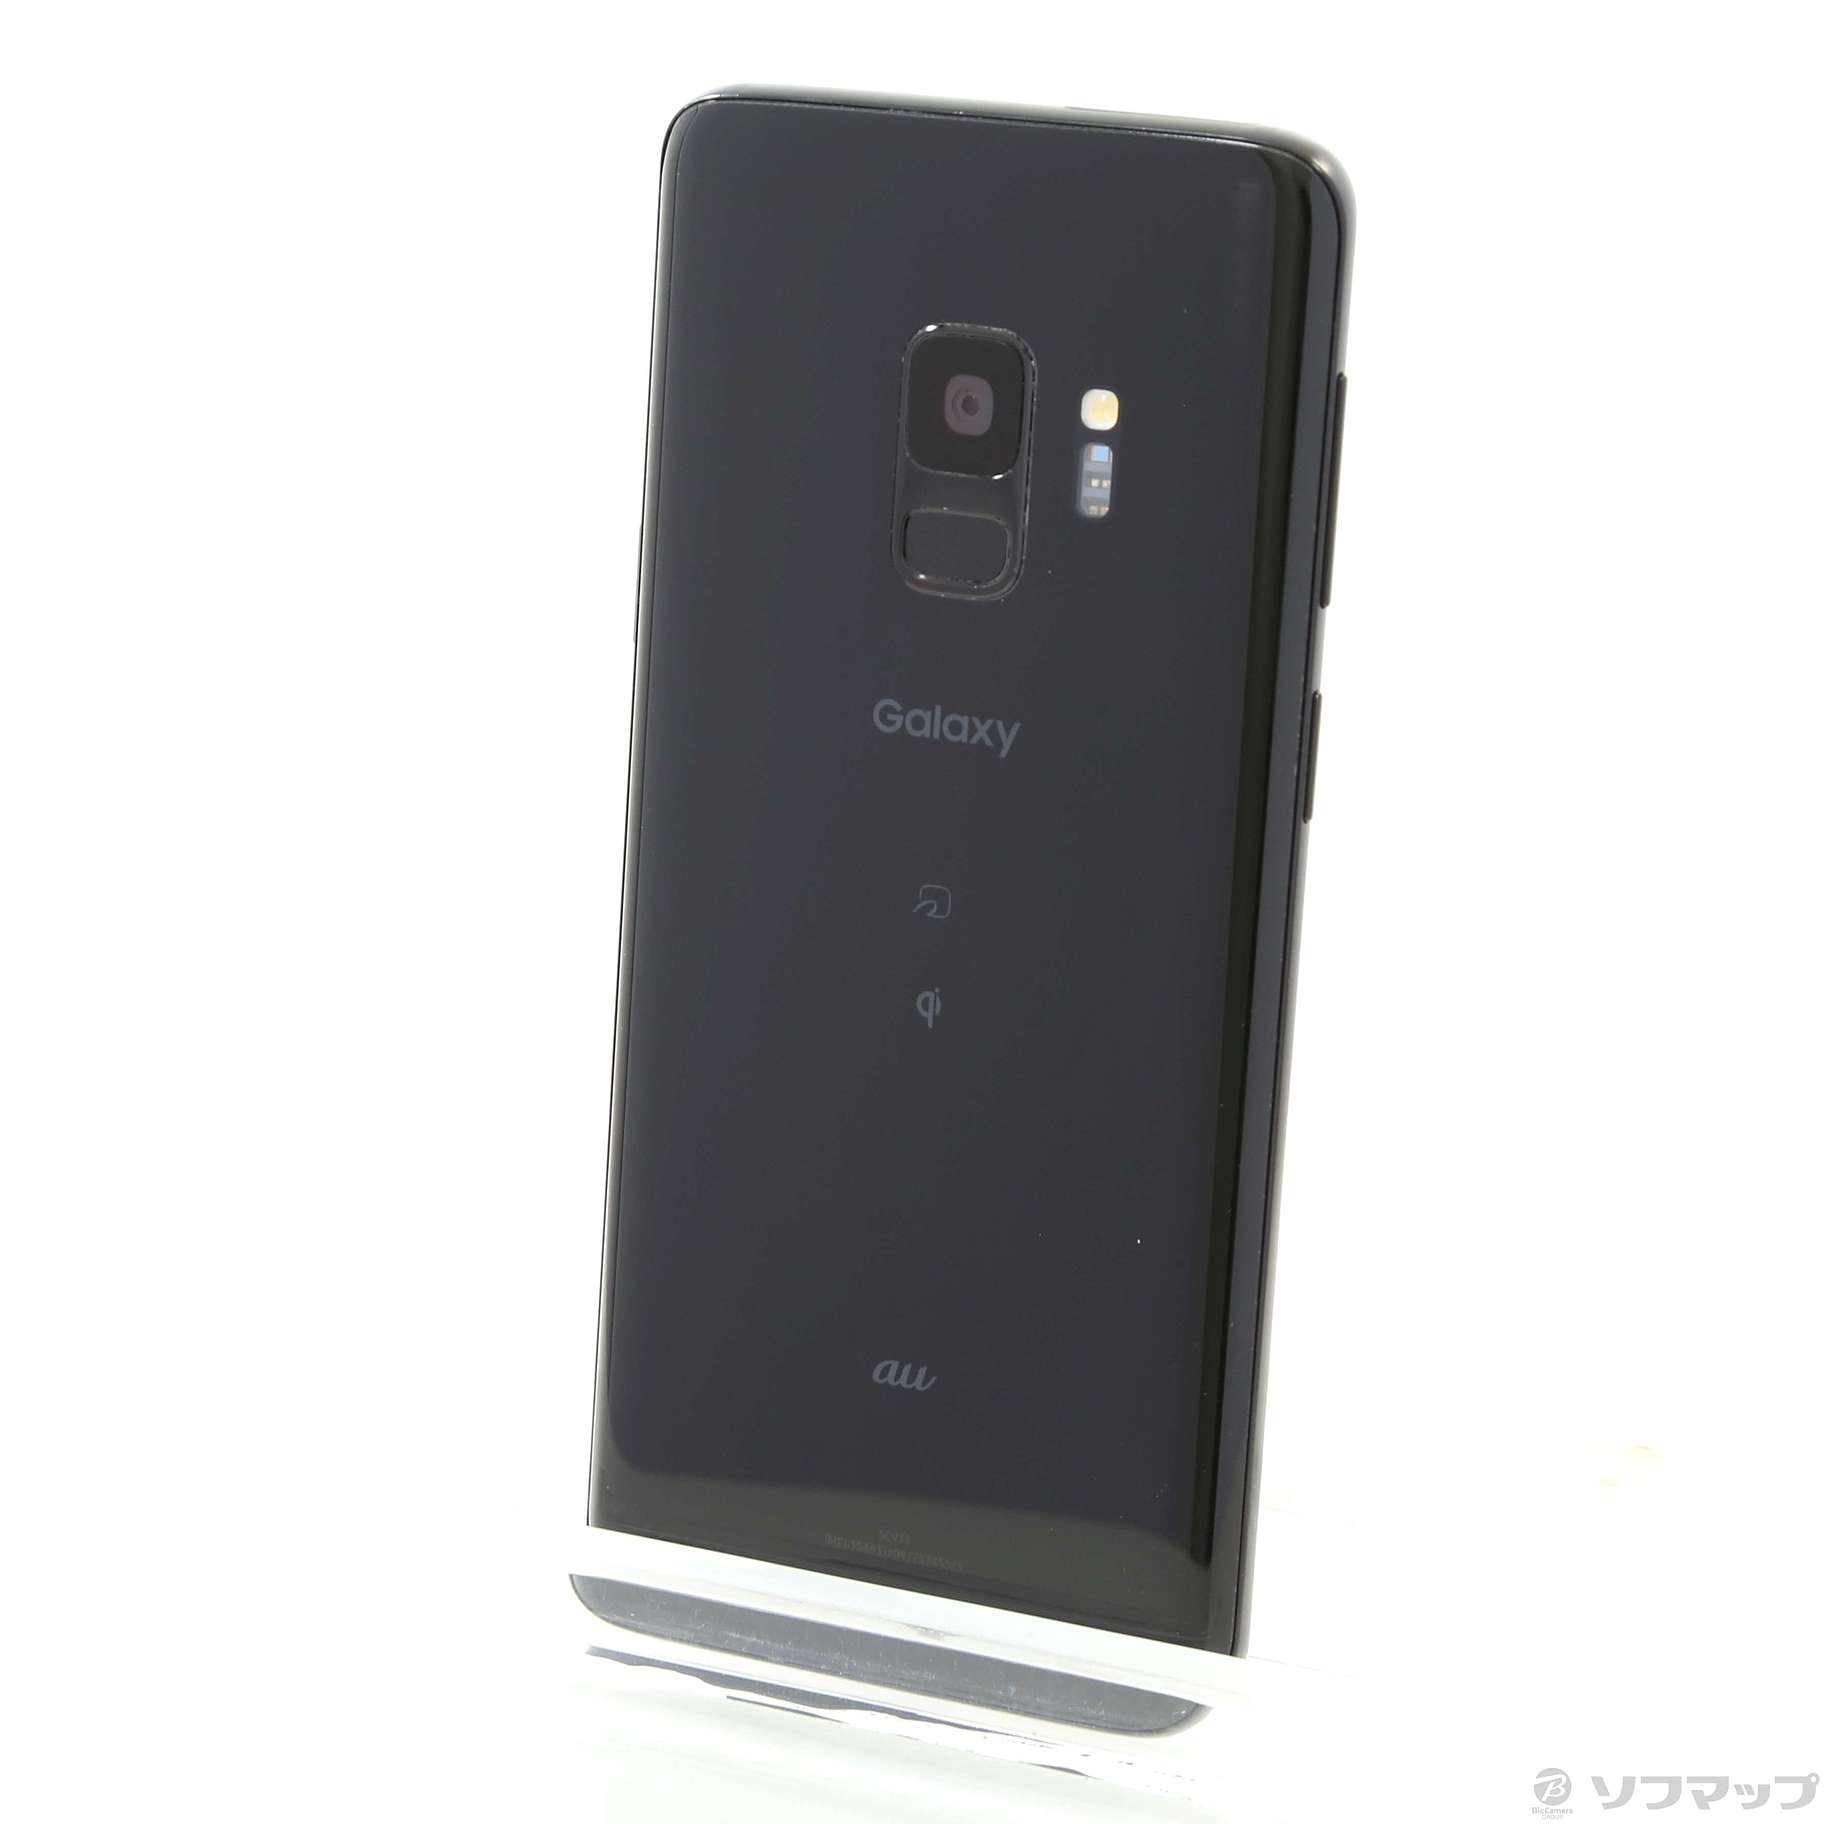 Galaxy S9 Midnight Black 64 GB auスマートフォン本体